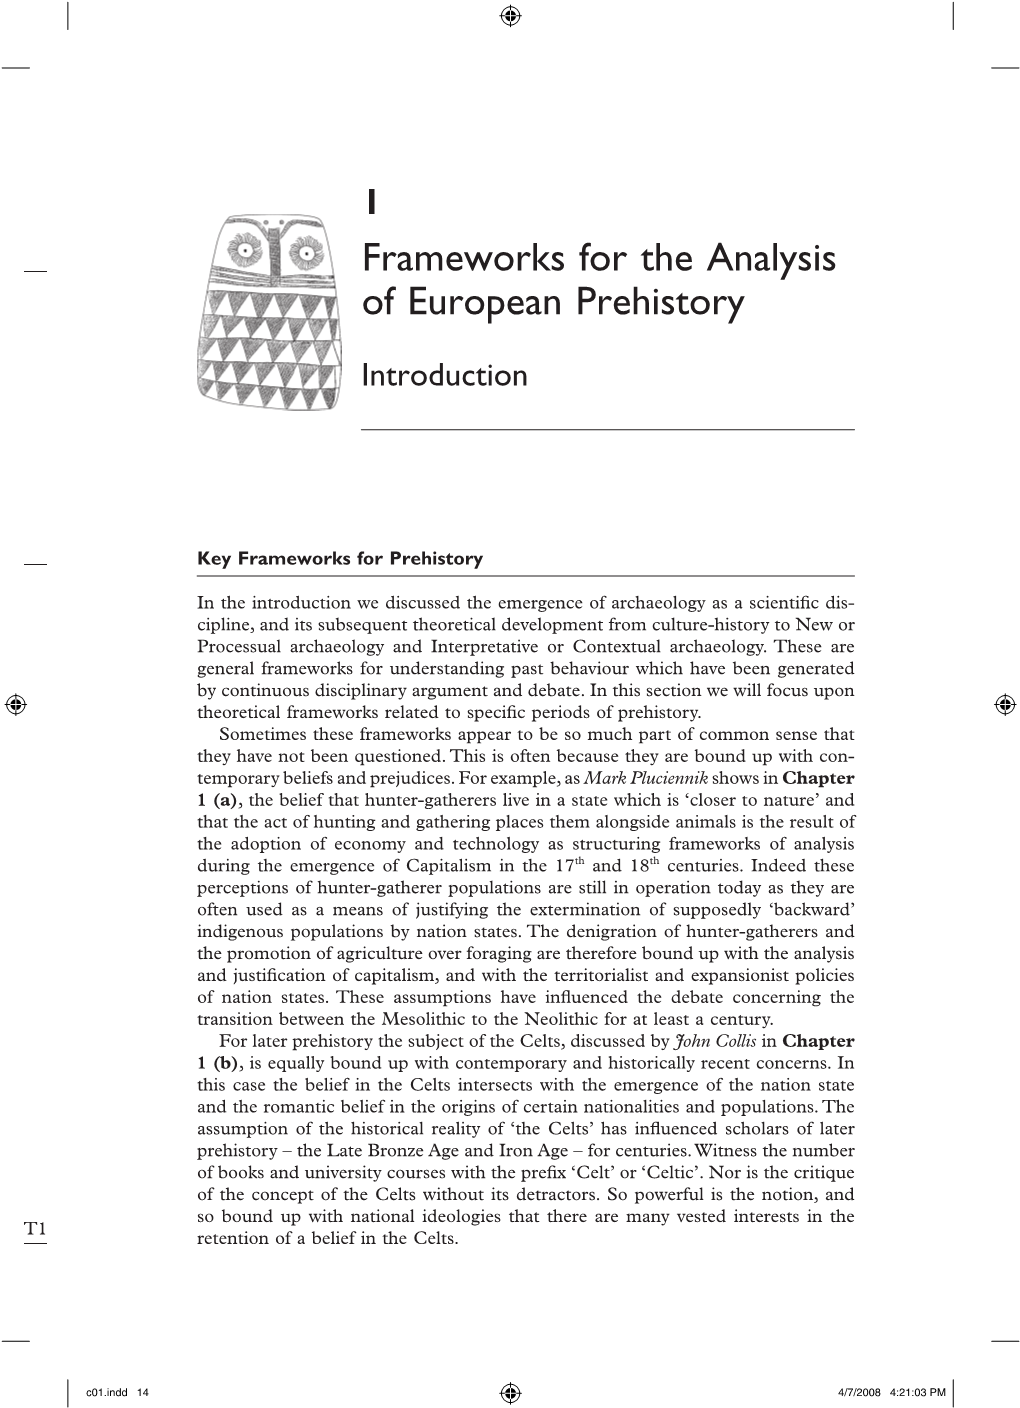 Frameworks for the Analysis of European Prehistory